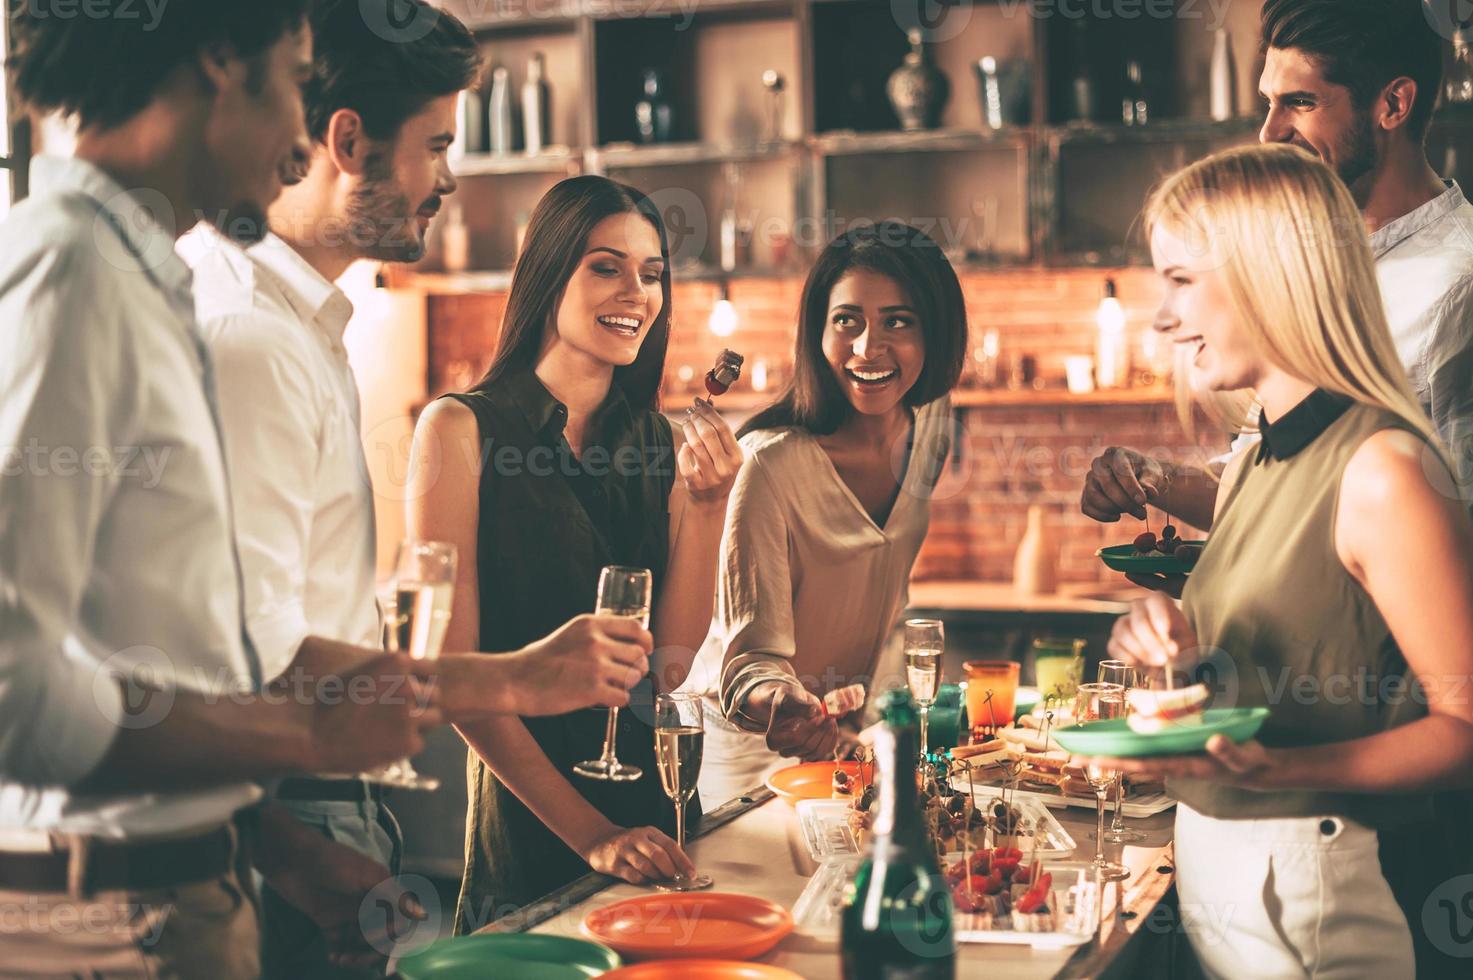 curtindo a festa em casa. grupo de jovens alegres curtindo a festa em casa com lanches e bebidas enquanto se comunicam na cozinha foto